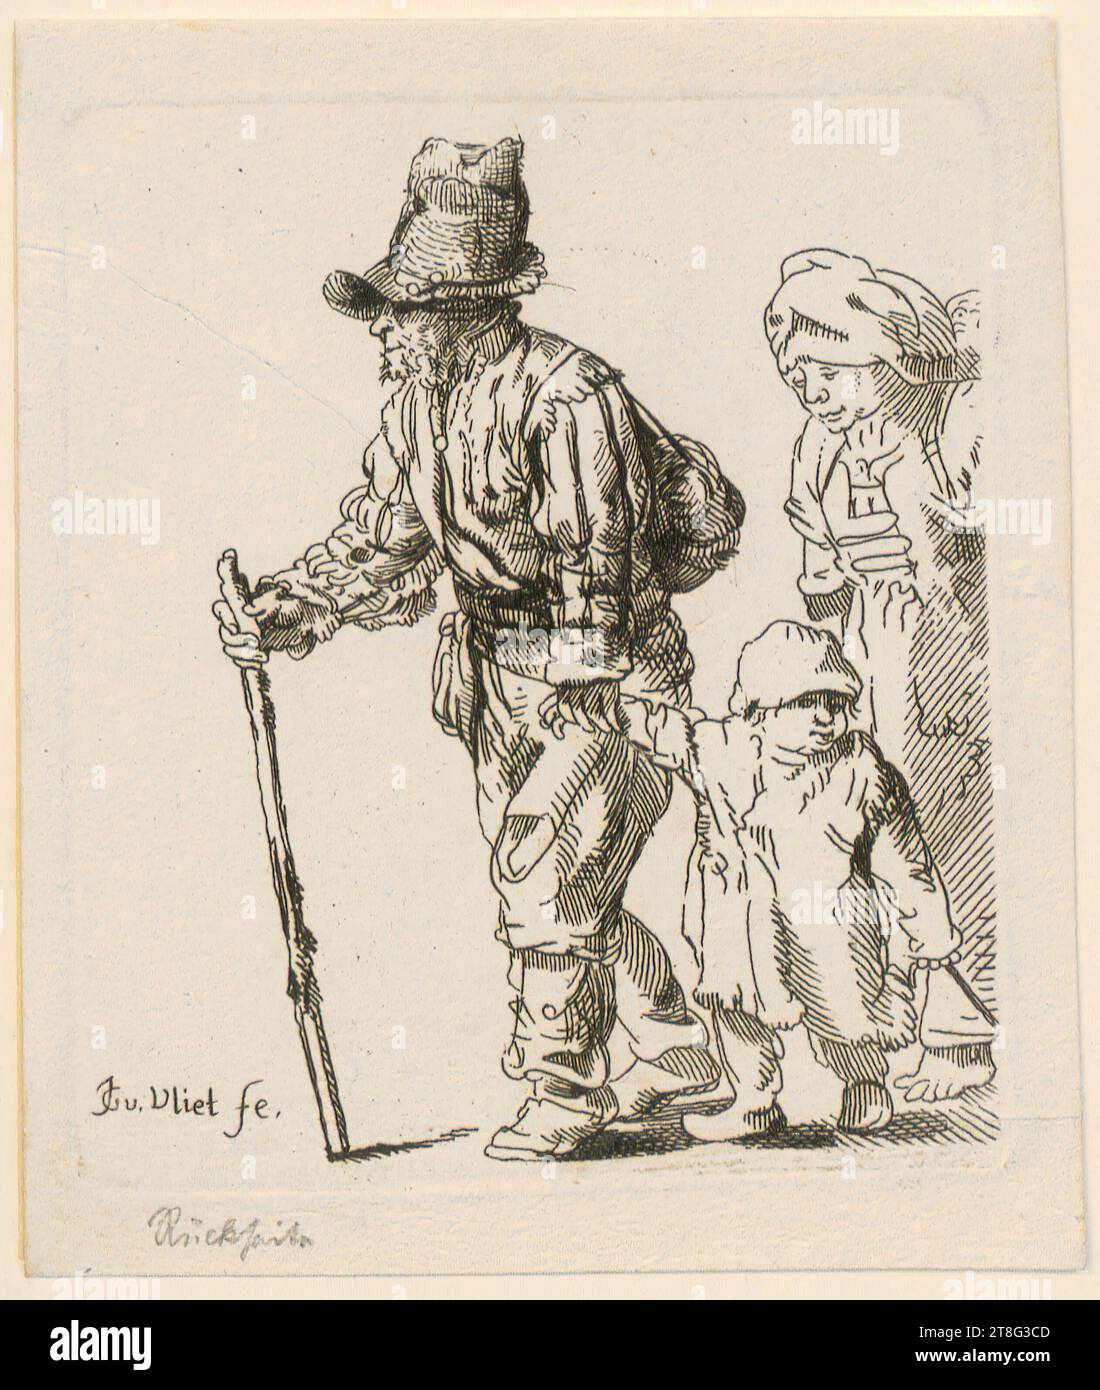 Johannes van Vliet (1628 - 1637 mentionné autour), copie d'après, famille paysanne sur le rouleau, origine de l'impression : 1750 - 1830, gravure, taille de la feuille : 11,7 x 9,8 cm, en bas à gauche inscrit 'JG v. Vliet fe Banque D'Images